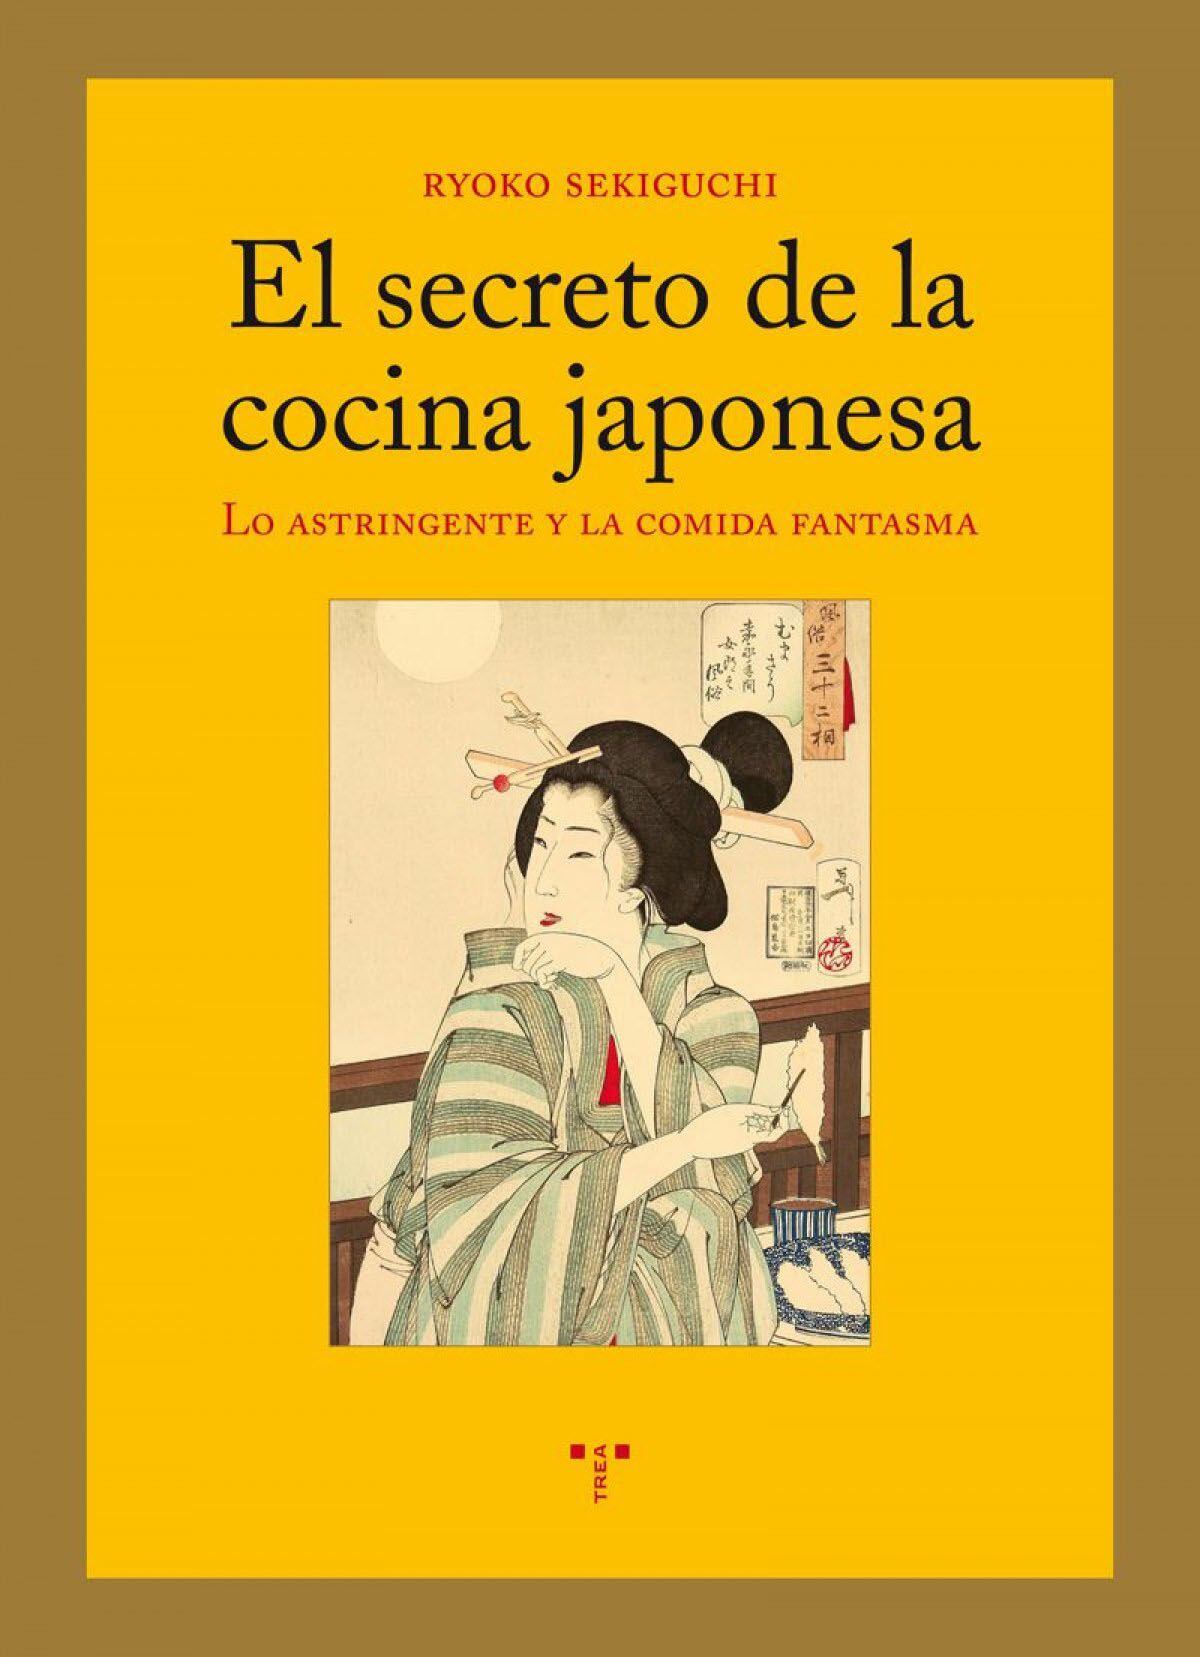 Portada de El secreto de la cocina japonesa, de Ryoko Sekiguchi (Ediciones Trea).